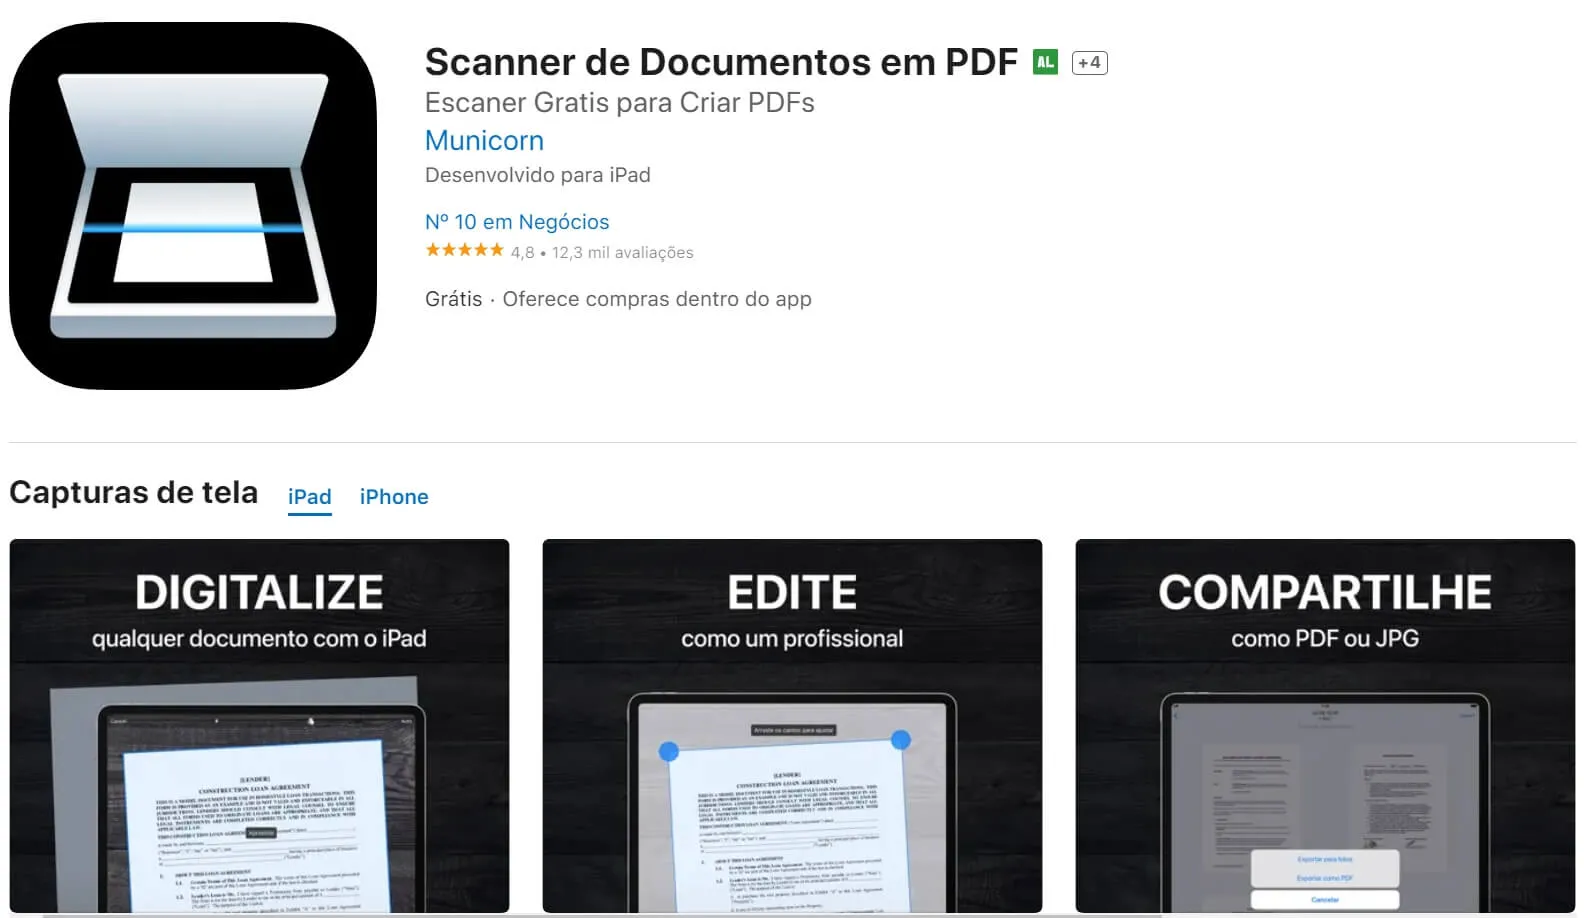 Converter imagens em PDF no seu iPhone